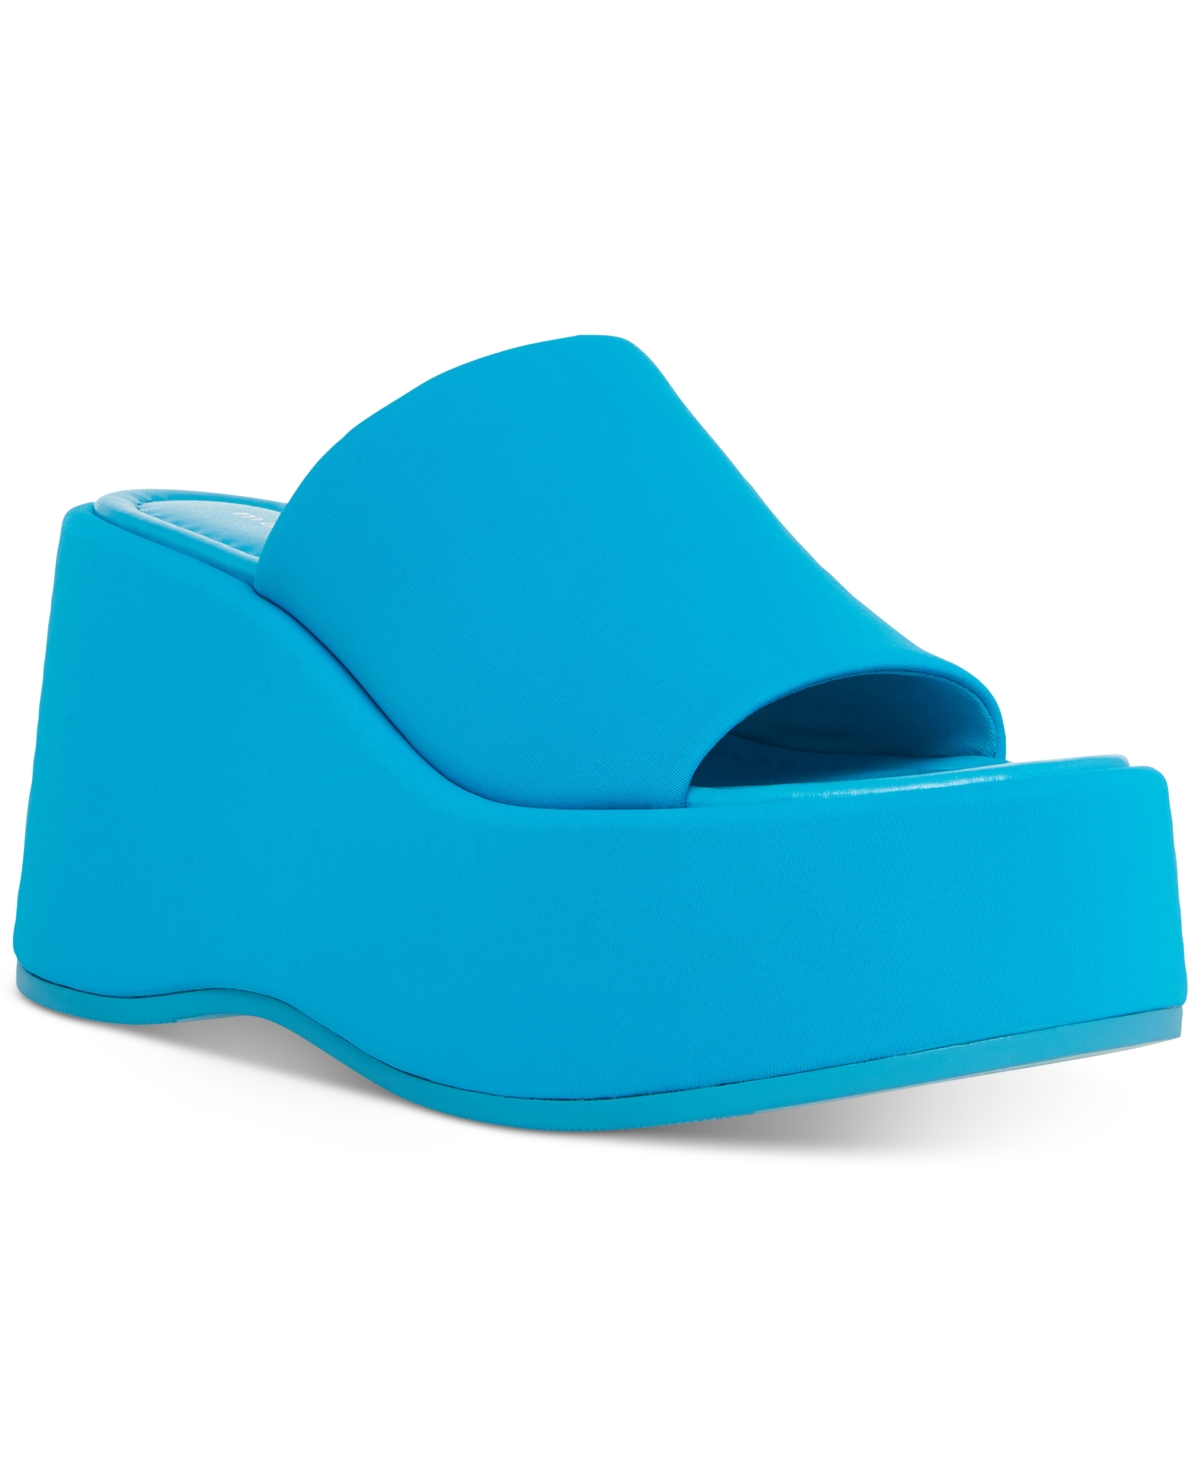 Madden Girl Nico Platform Wedge Sandals In Bright Blue